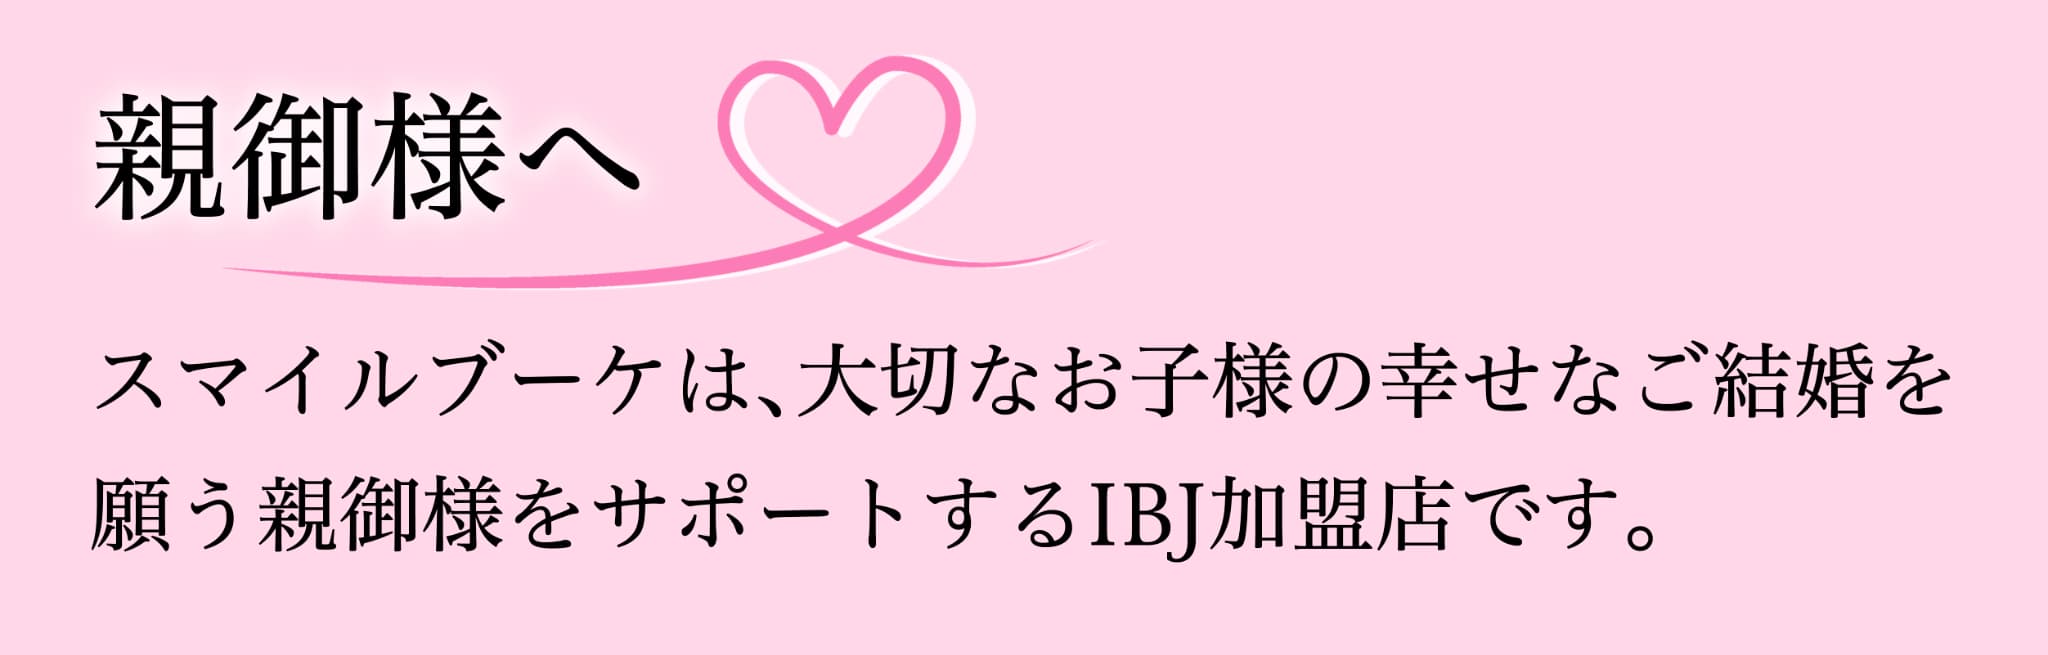 江坂駅から徒歩5分の結婚相談所[ スマイルブーケ ]がIBJ加盟店であることを知らせるバナー